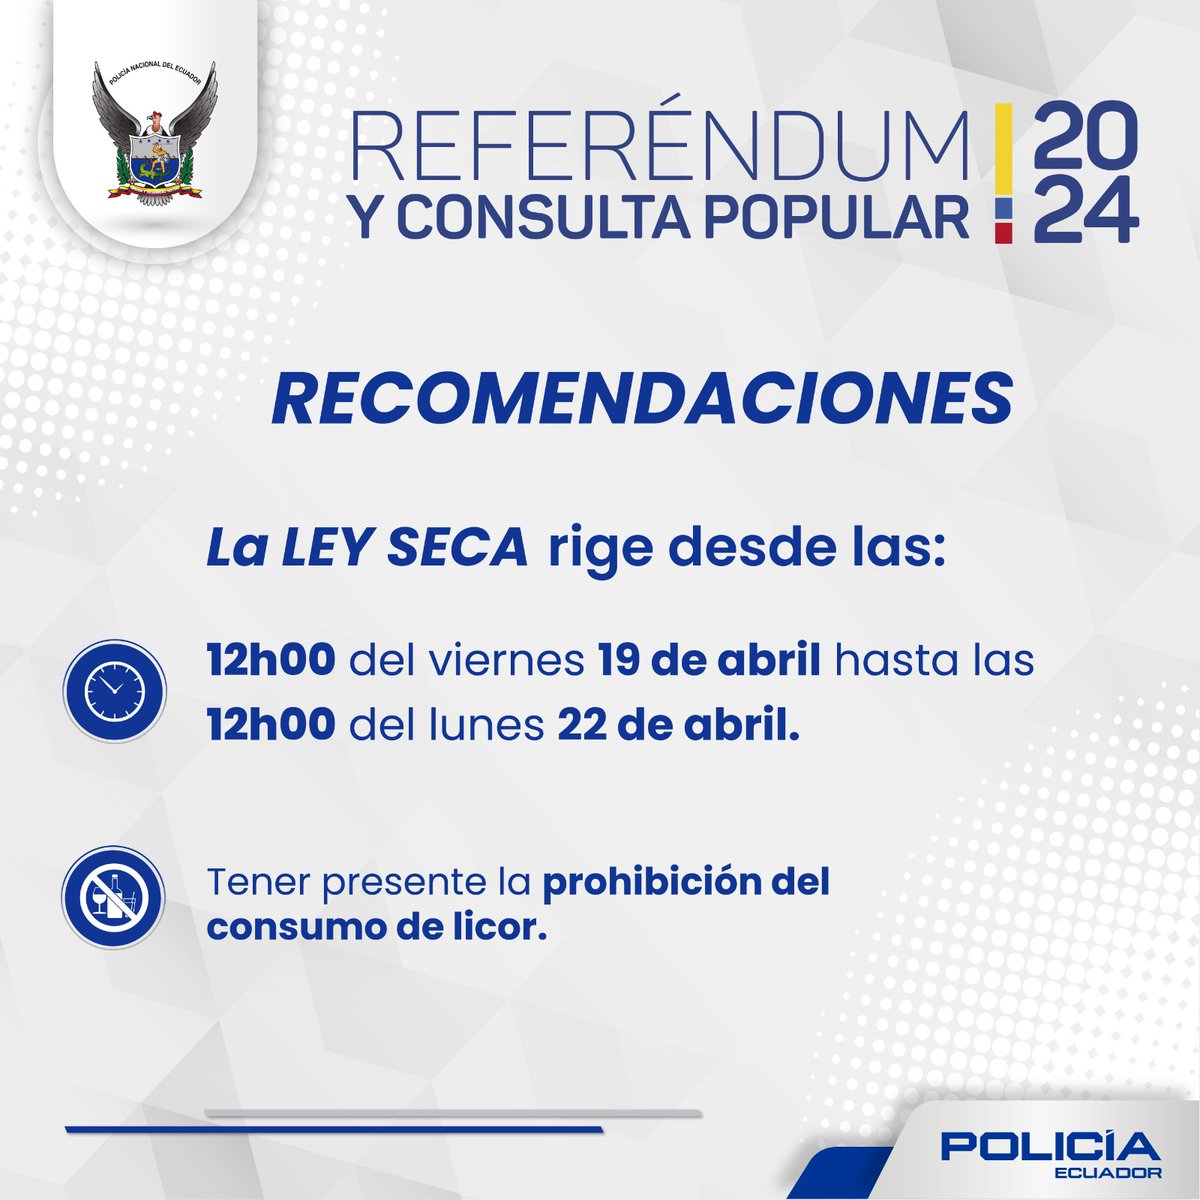 #ATENCIÓN 🚨

👉🏼 La ley seca inicia a las 12H00 del viernes 19 de abril hasta el lunes 22 de abril.

#ReferéndumYConsulta2024
#PolicíaEcuador